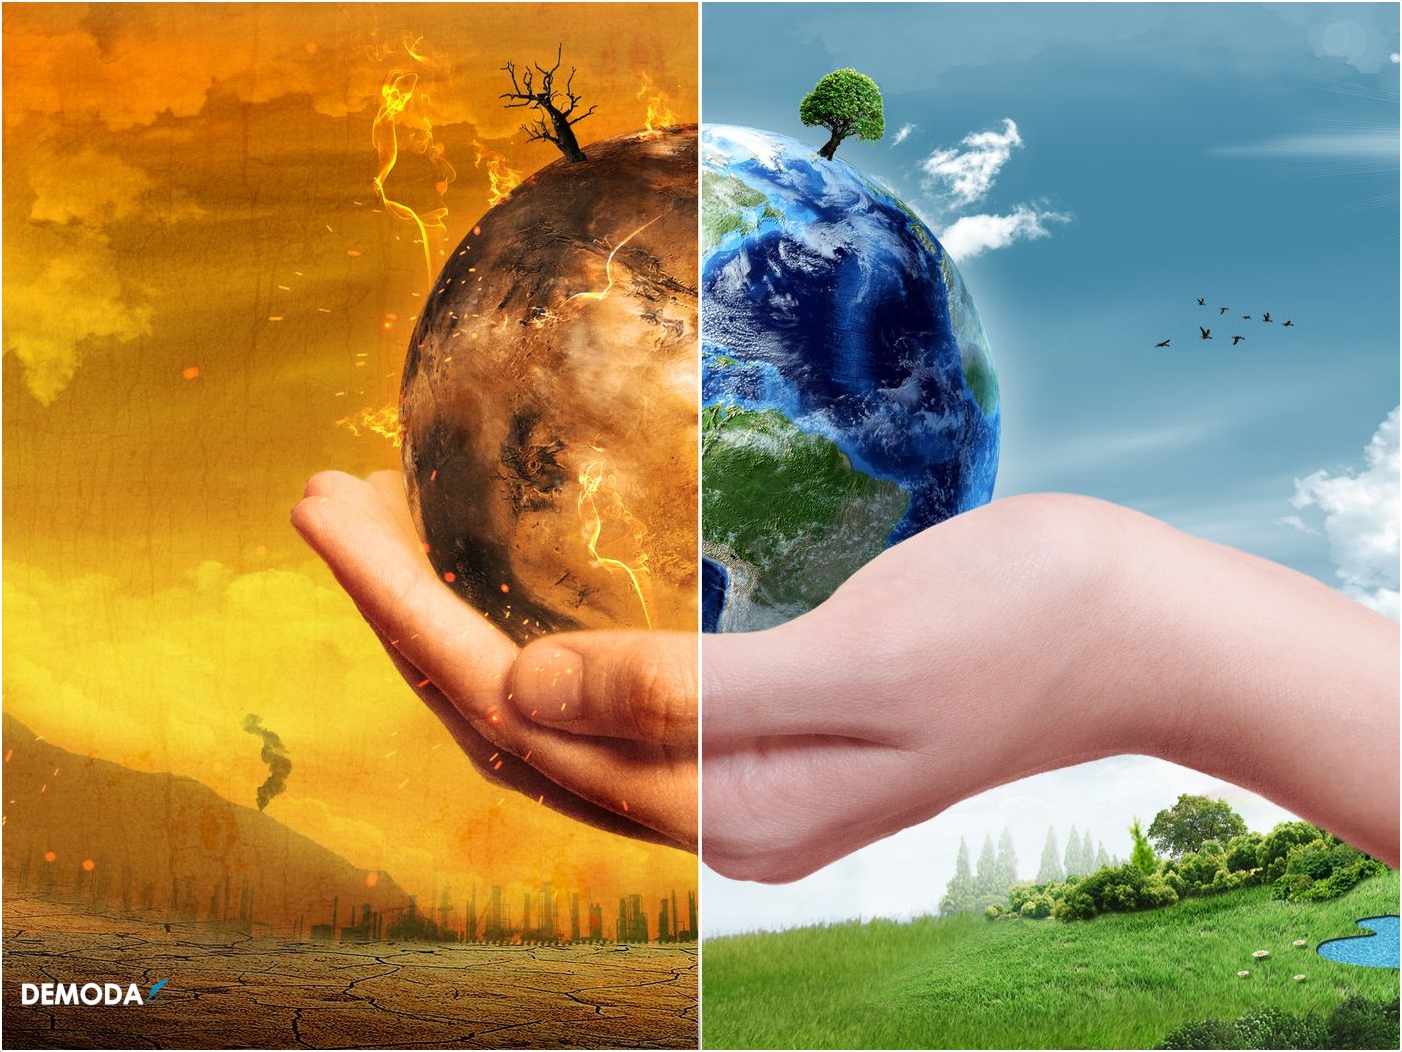 Hình ảnh về ô nhiễm môi trường đất sẽ giúp bạn nhận thức được tầm quan trọng của việc giữ gìn môi trường đất, và hậu quả của việc lãng phí và ô nhiễm.